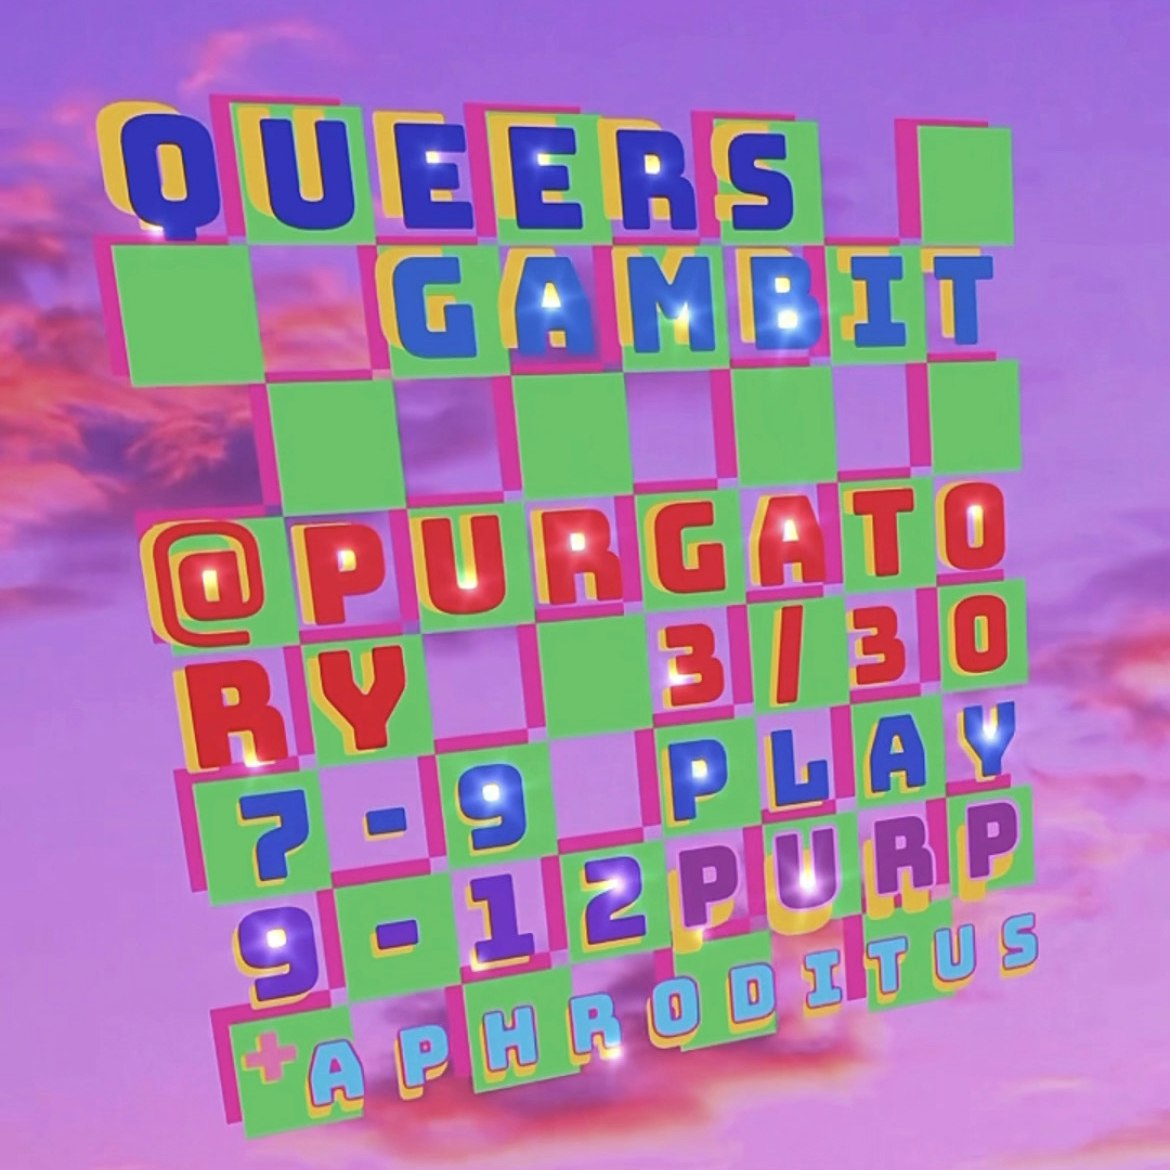 Queers Gambit